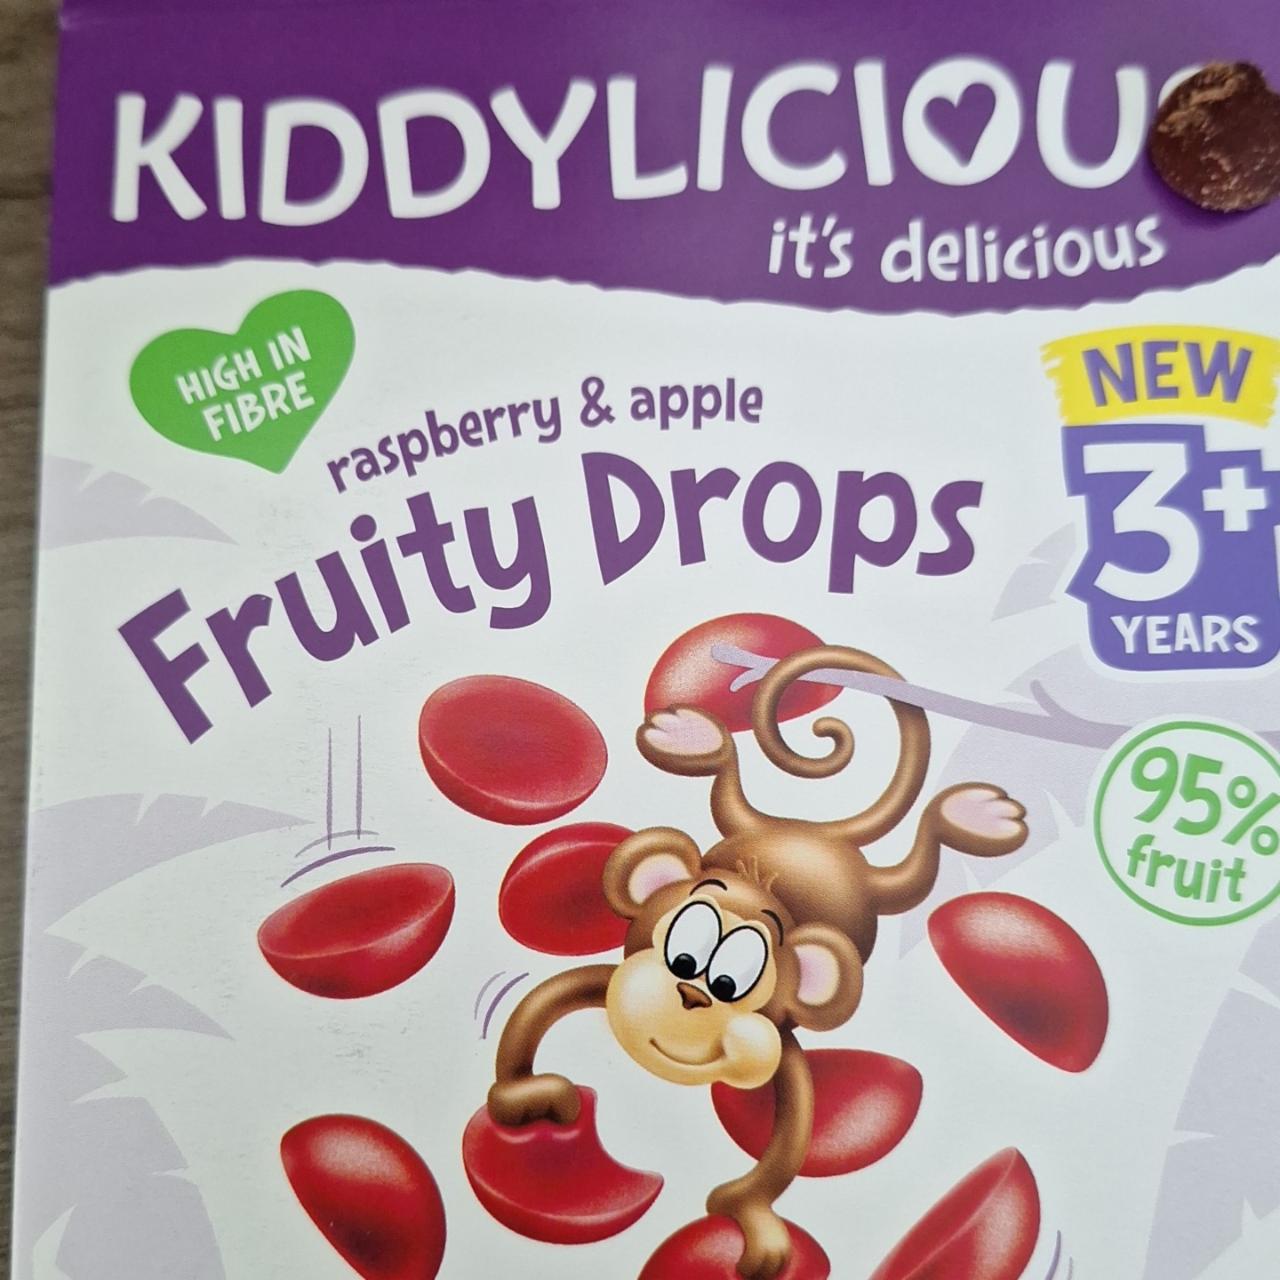 Fotografie - Fruity drops raspberry & apple Kiddylicious